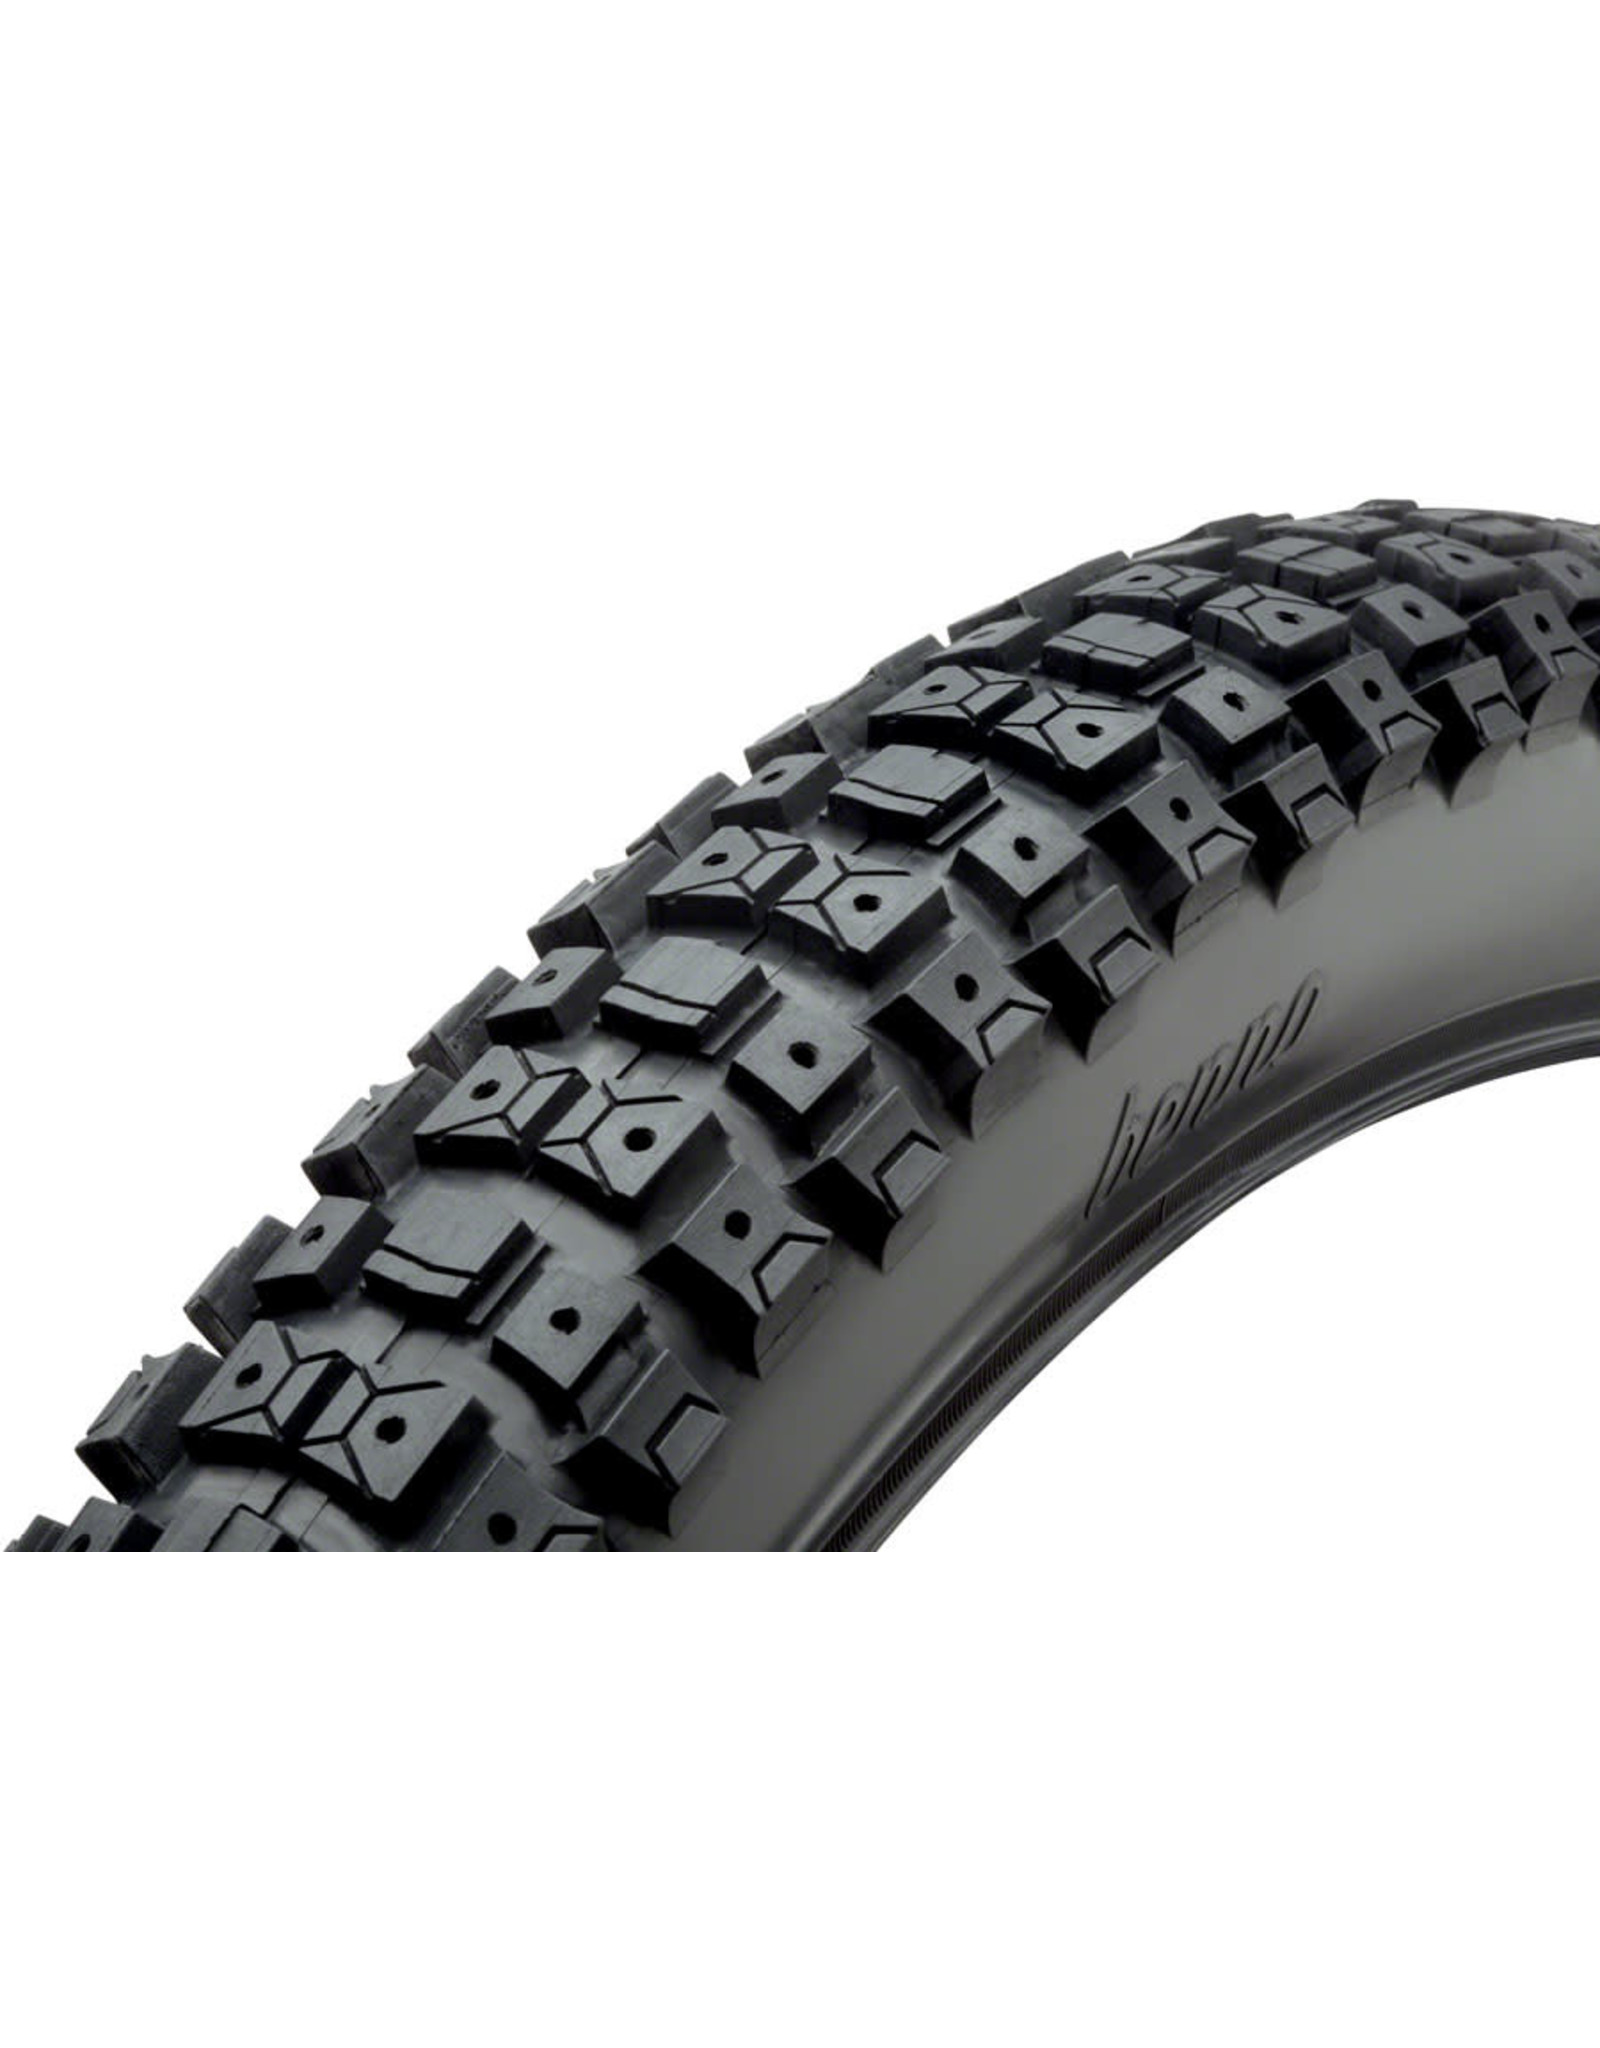 Benno Benno Knobby Dirt Tire - 24 x 2.5 Black